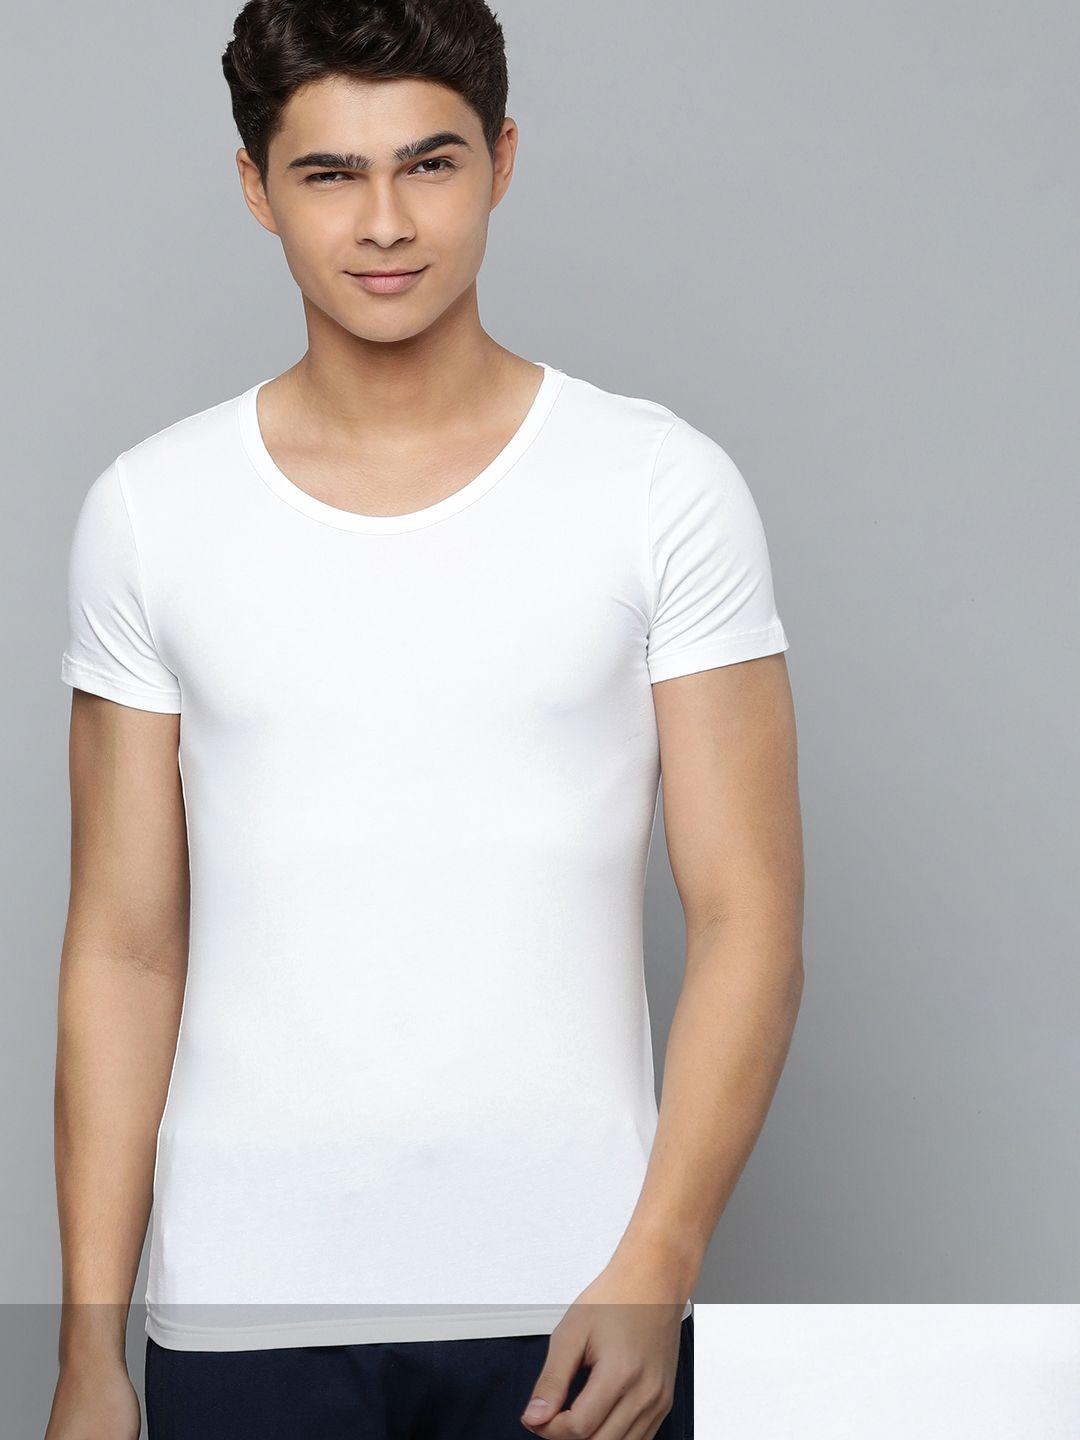 puma-men-white-round-neck-solid-t-shirt